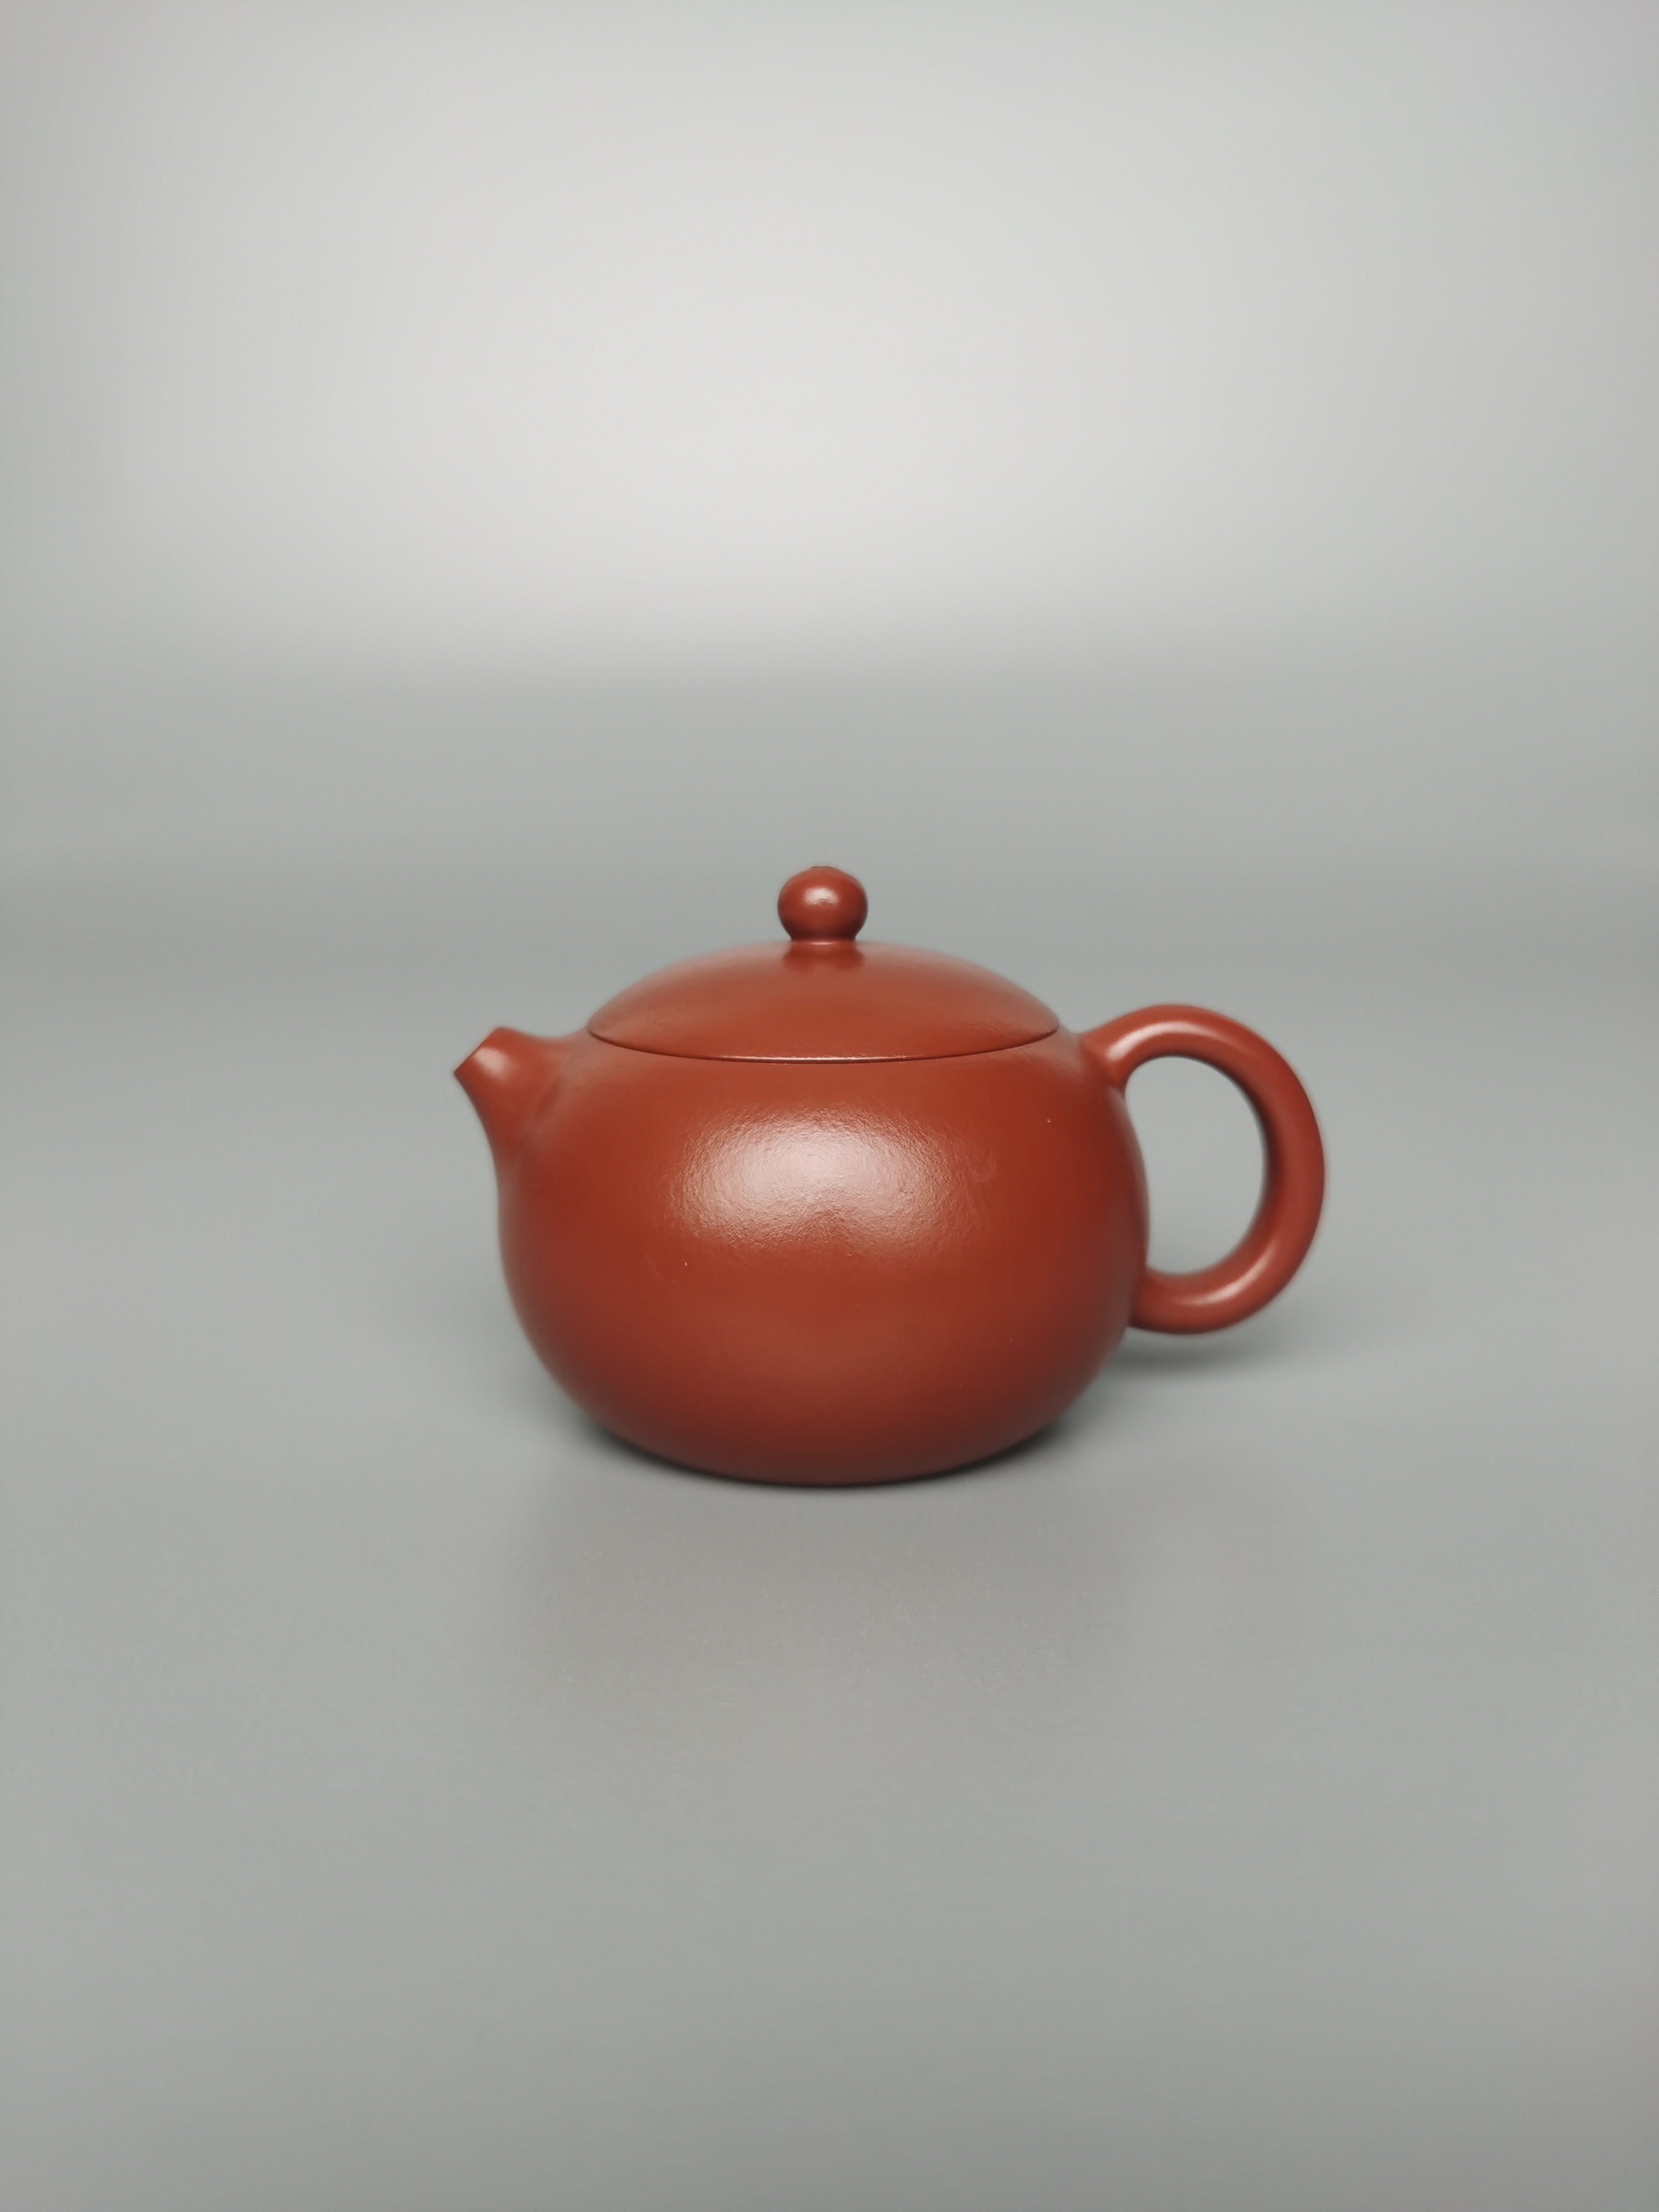 Siyutao teapot xishi full handcraft by artist qing xia 85ml yixing teapot